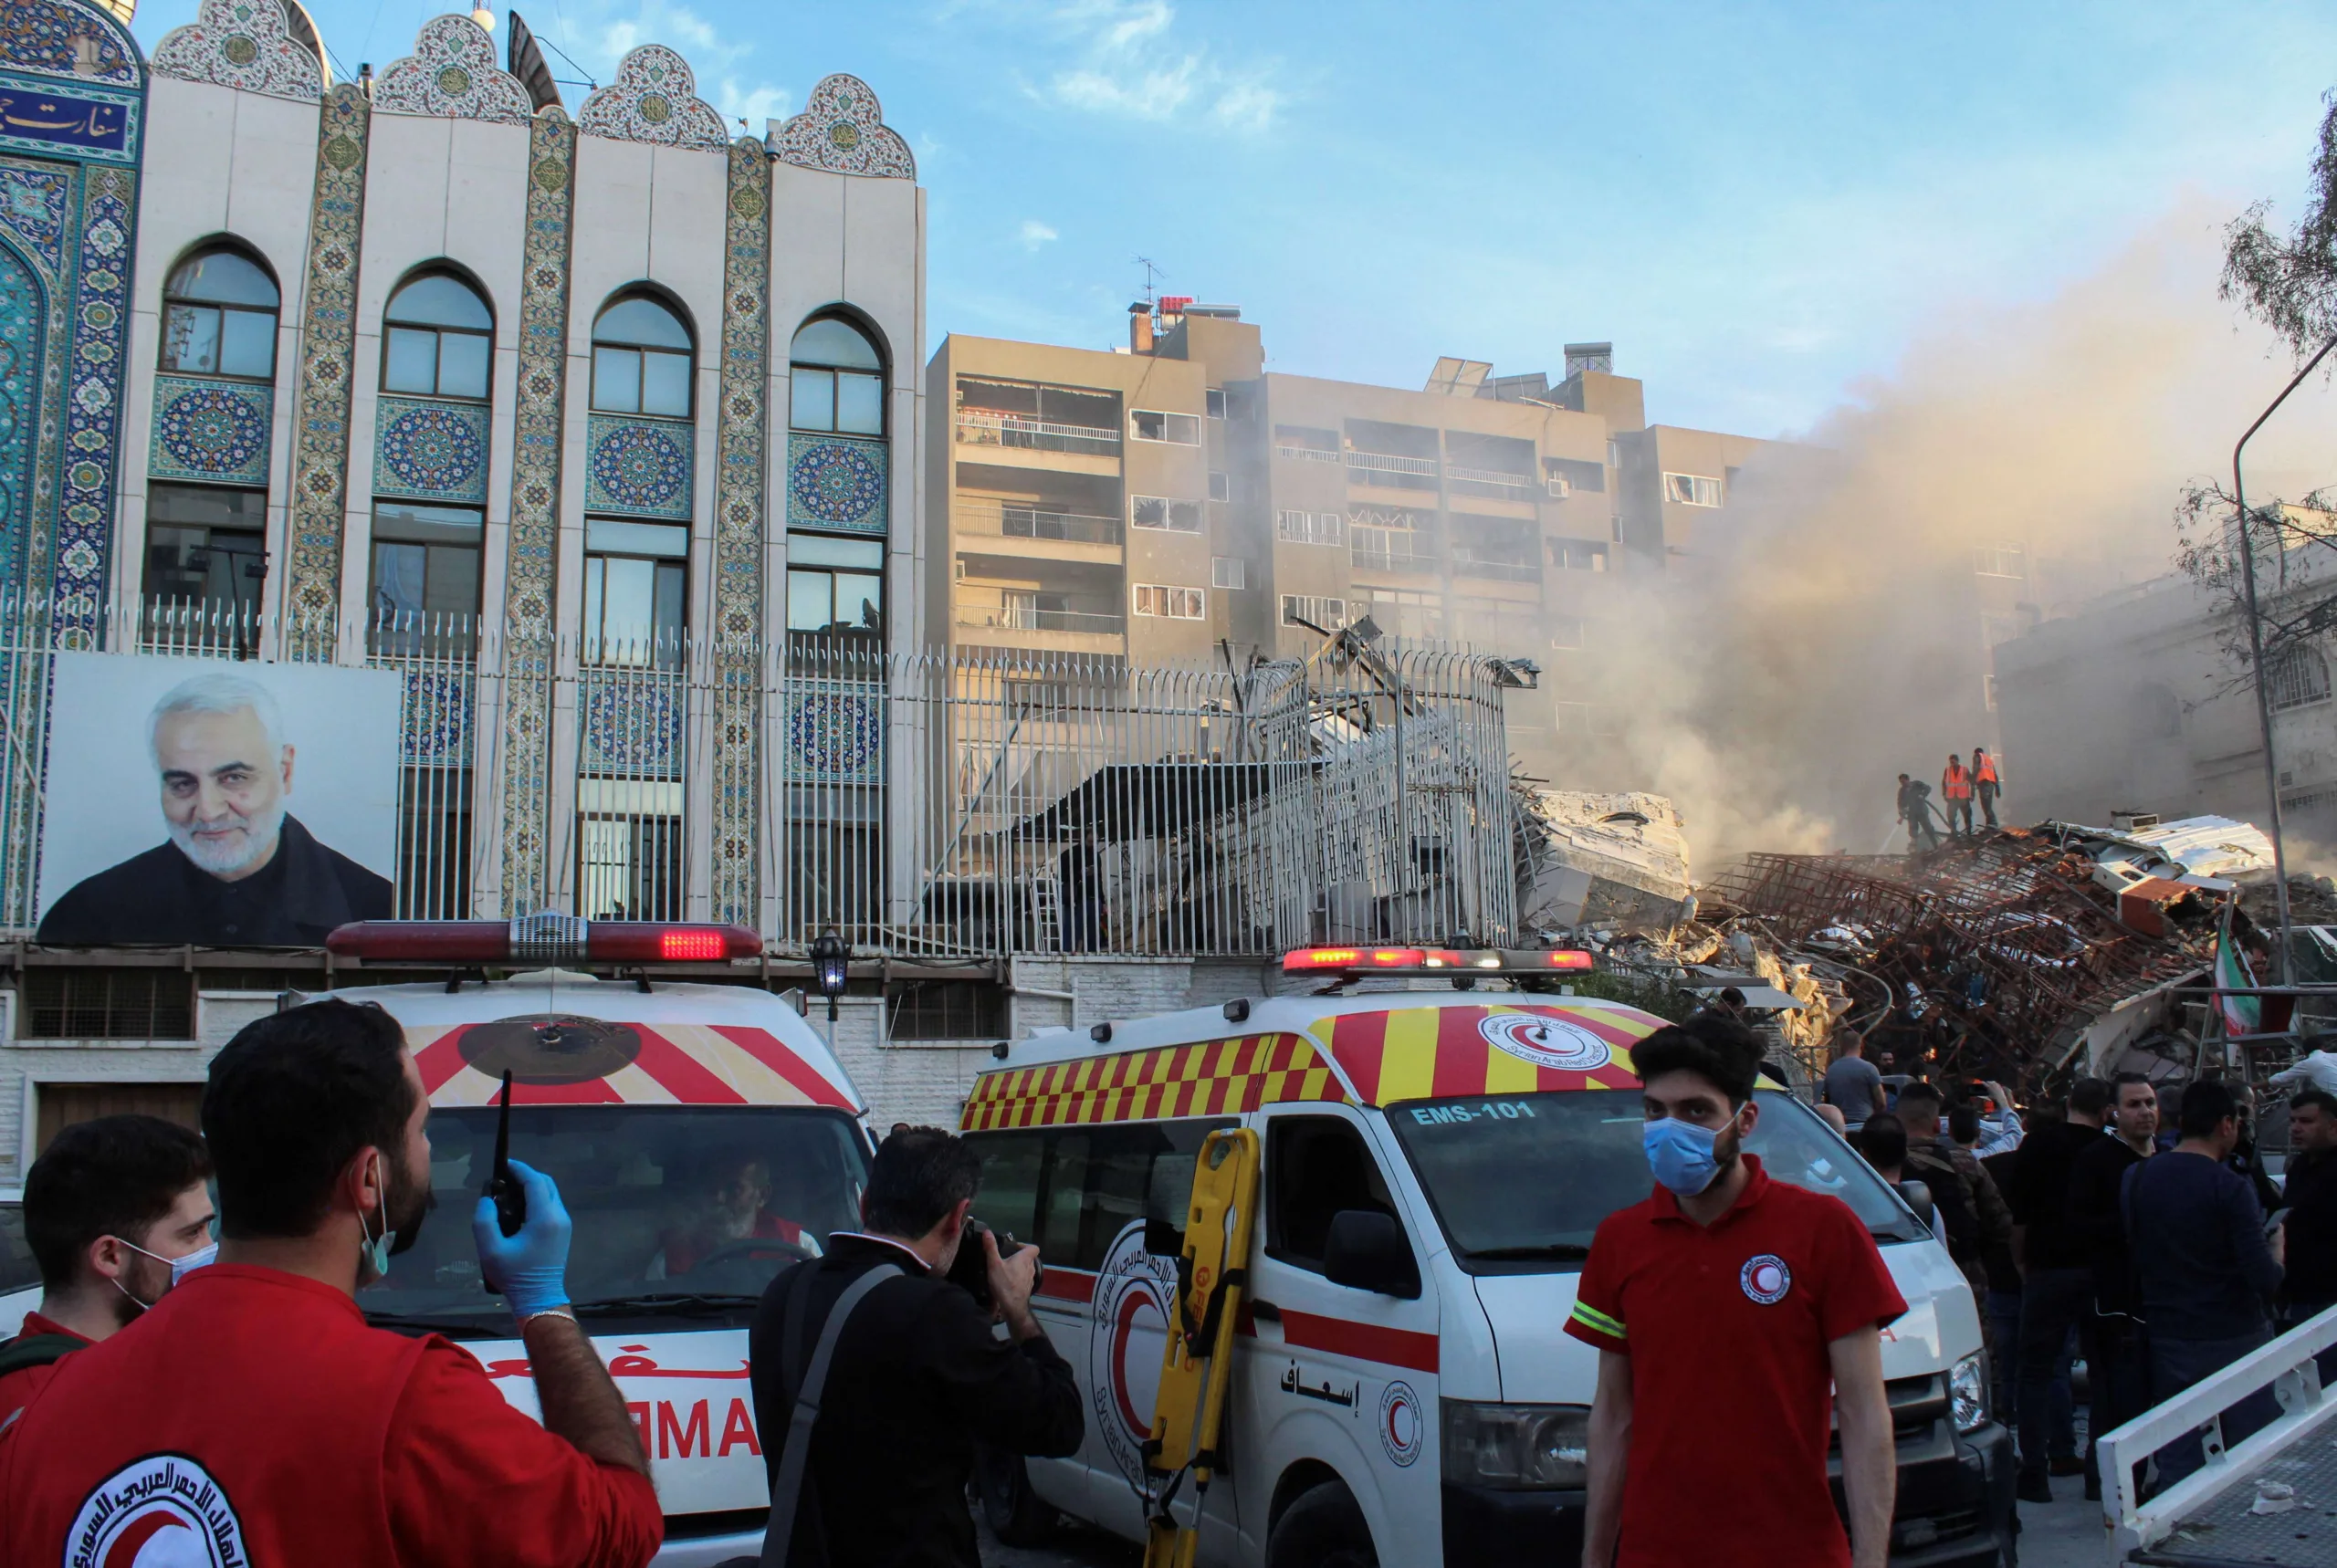 Embaixada do Irã na Síria é bombardeada, em ataque atribuído a Israel